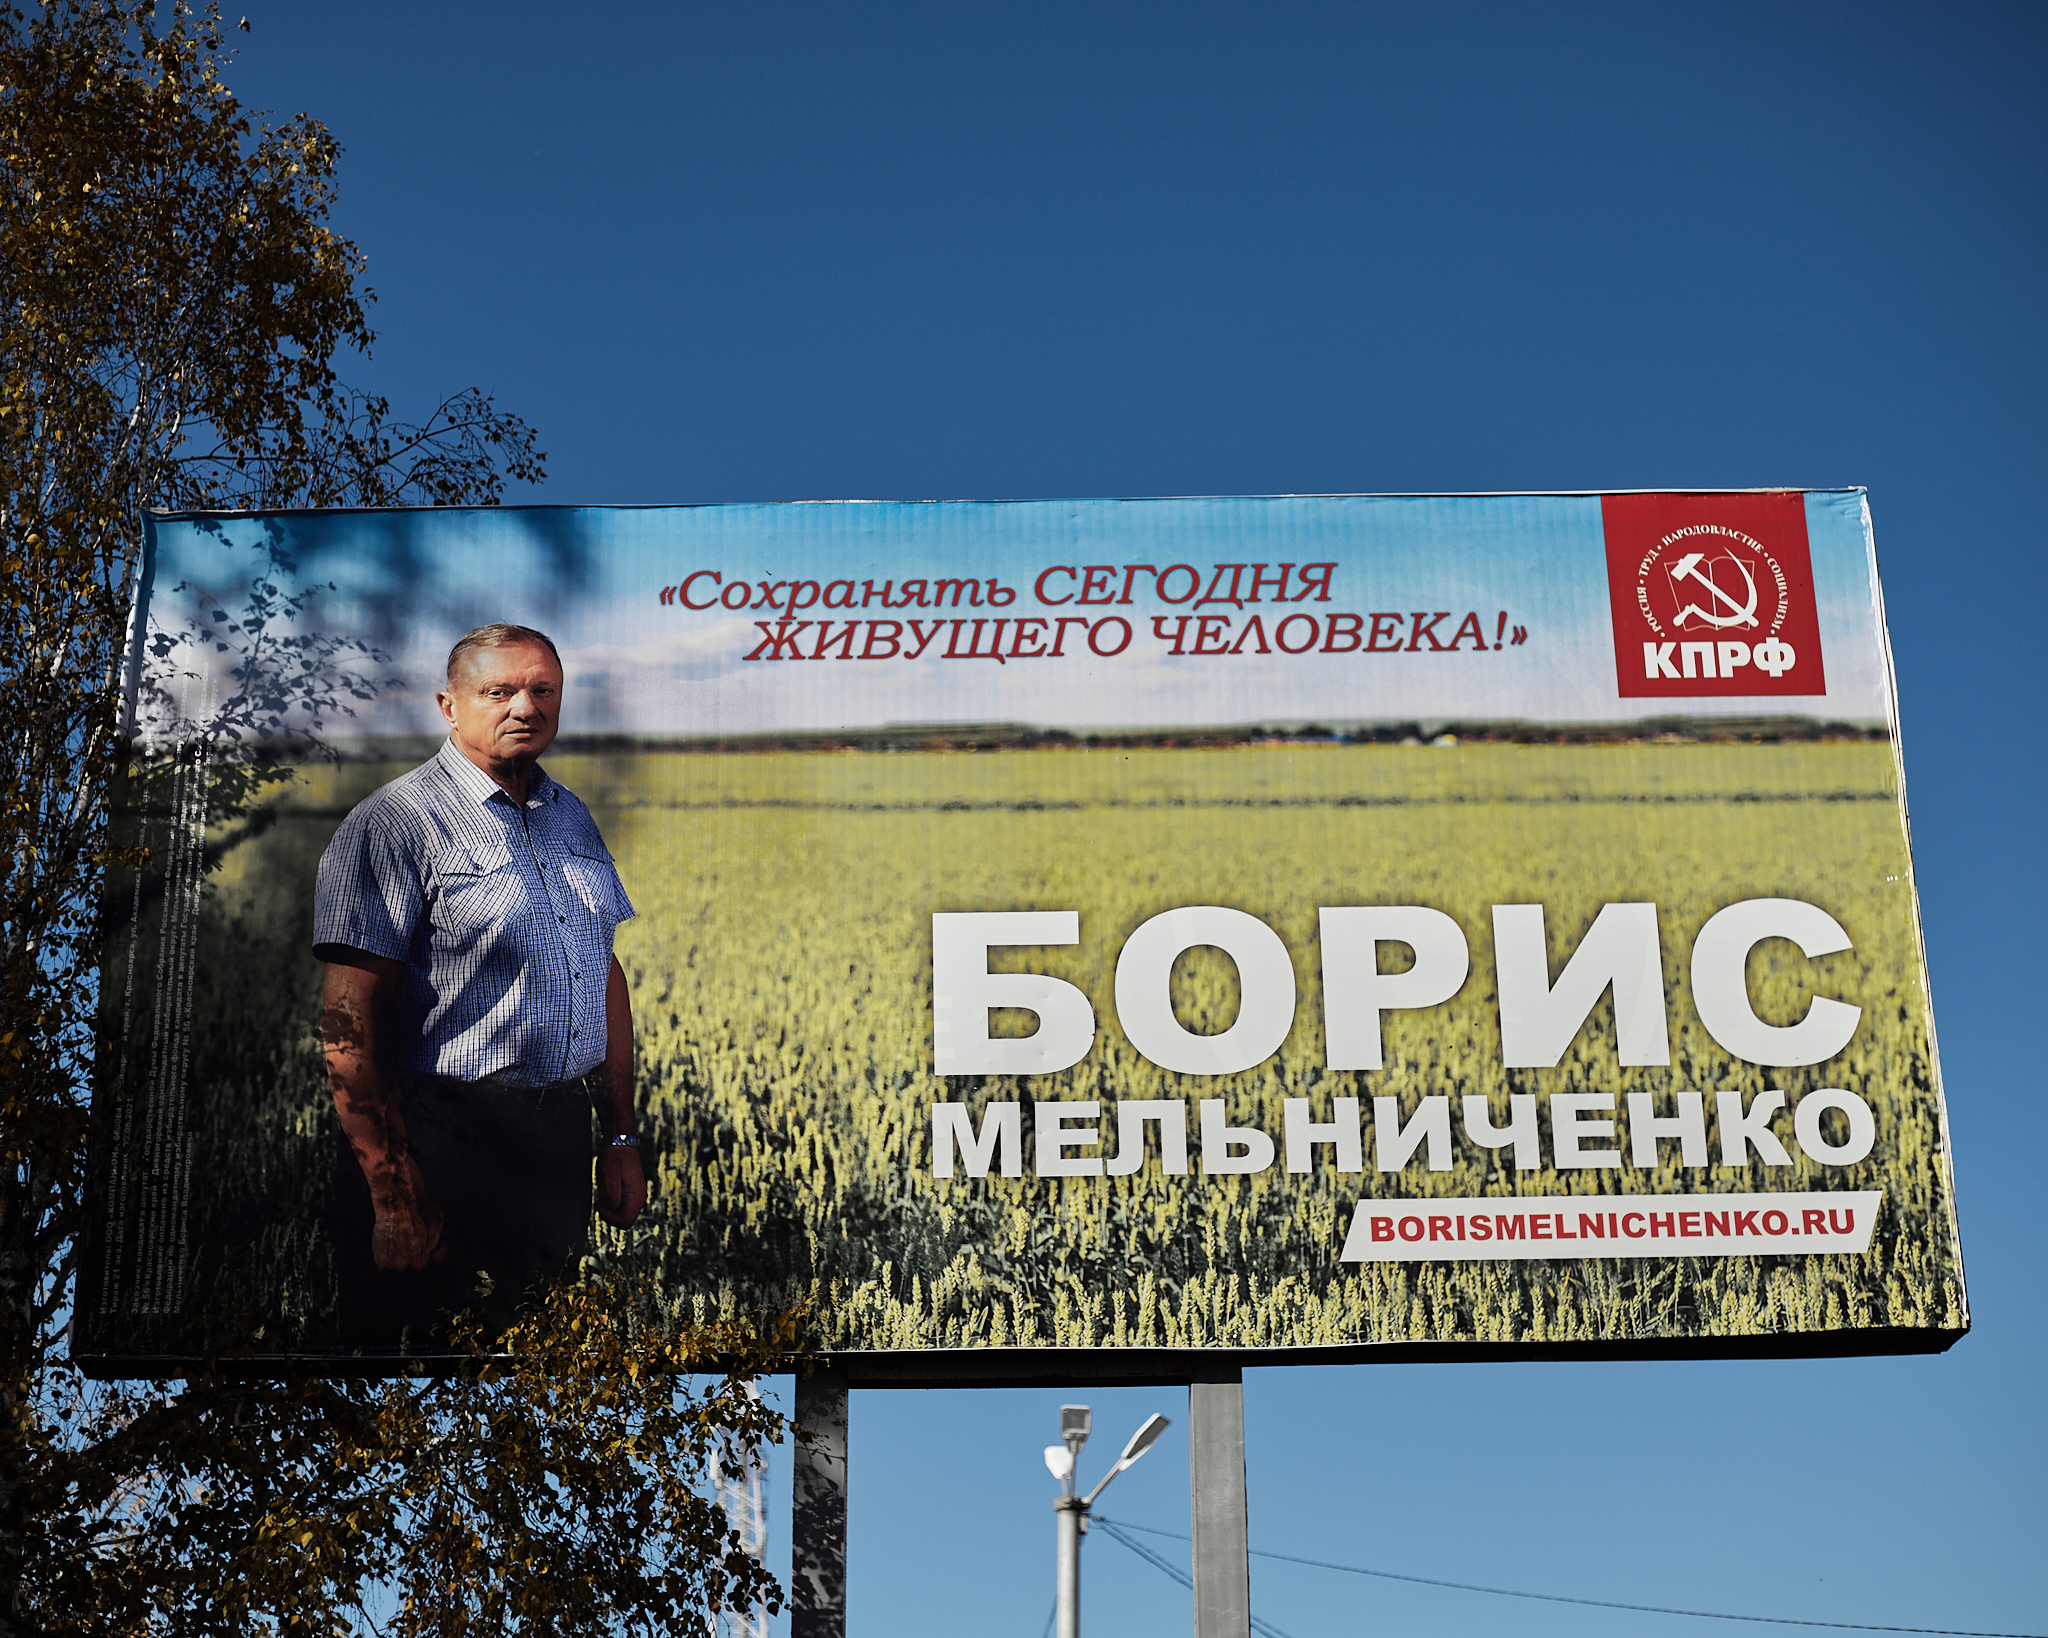 Мельниченко победил в выборах в Заксобрание по одномандатному округу, набрав 44%. Все остальные округа (их в крае всего 24) остались за ЕР. Он считает увольнение Мальцева расправой властей